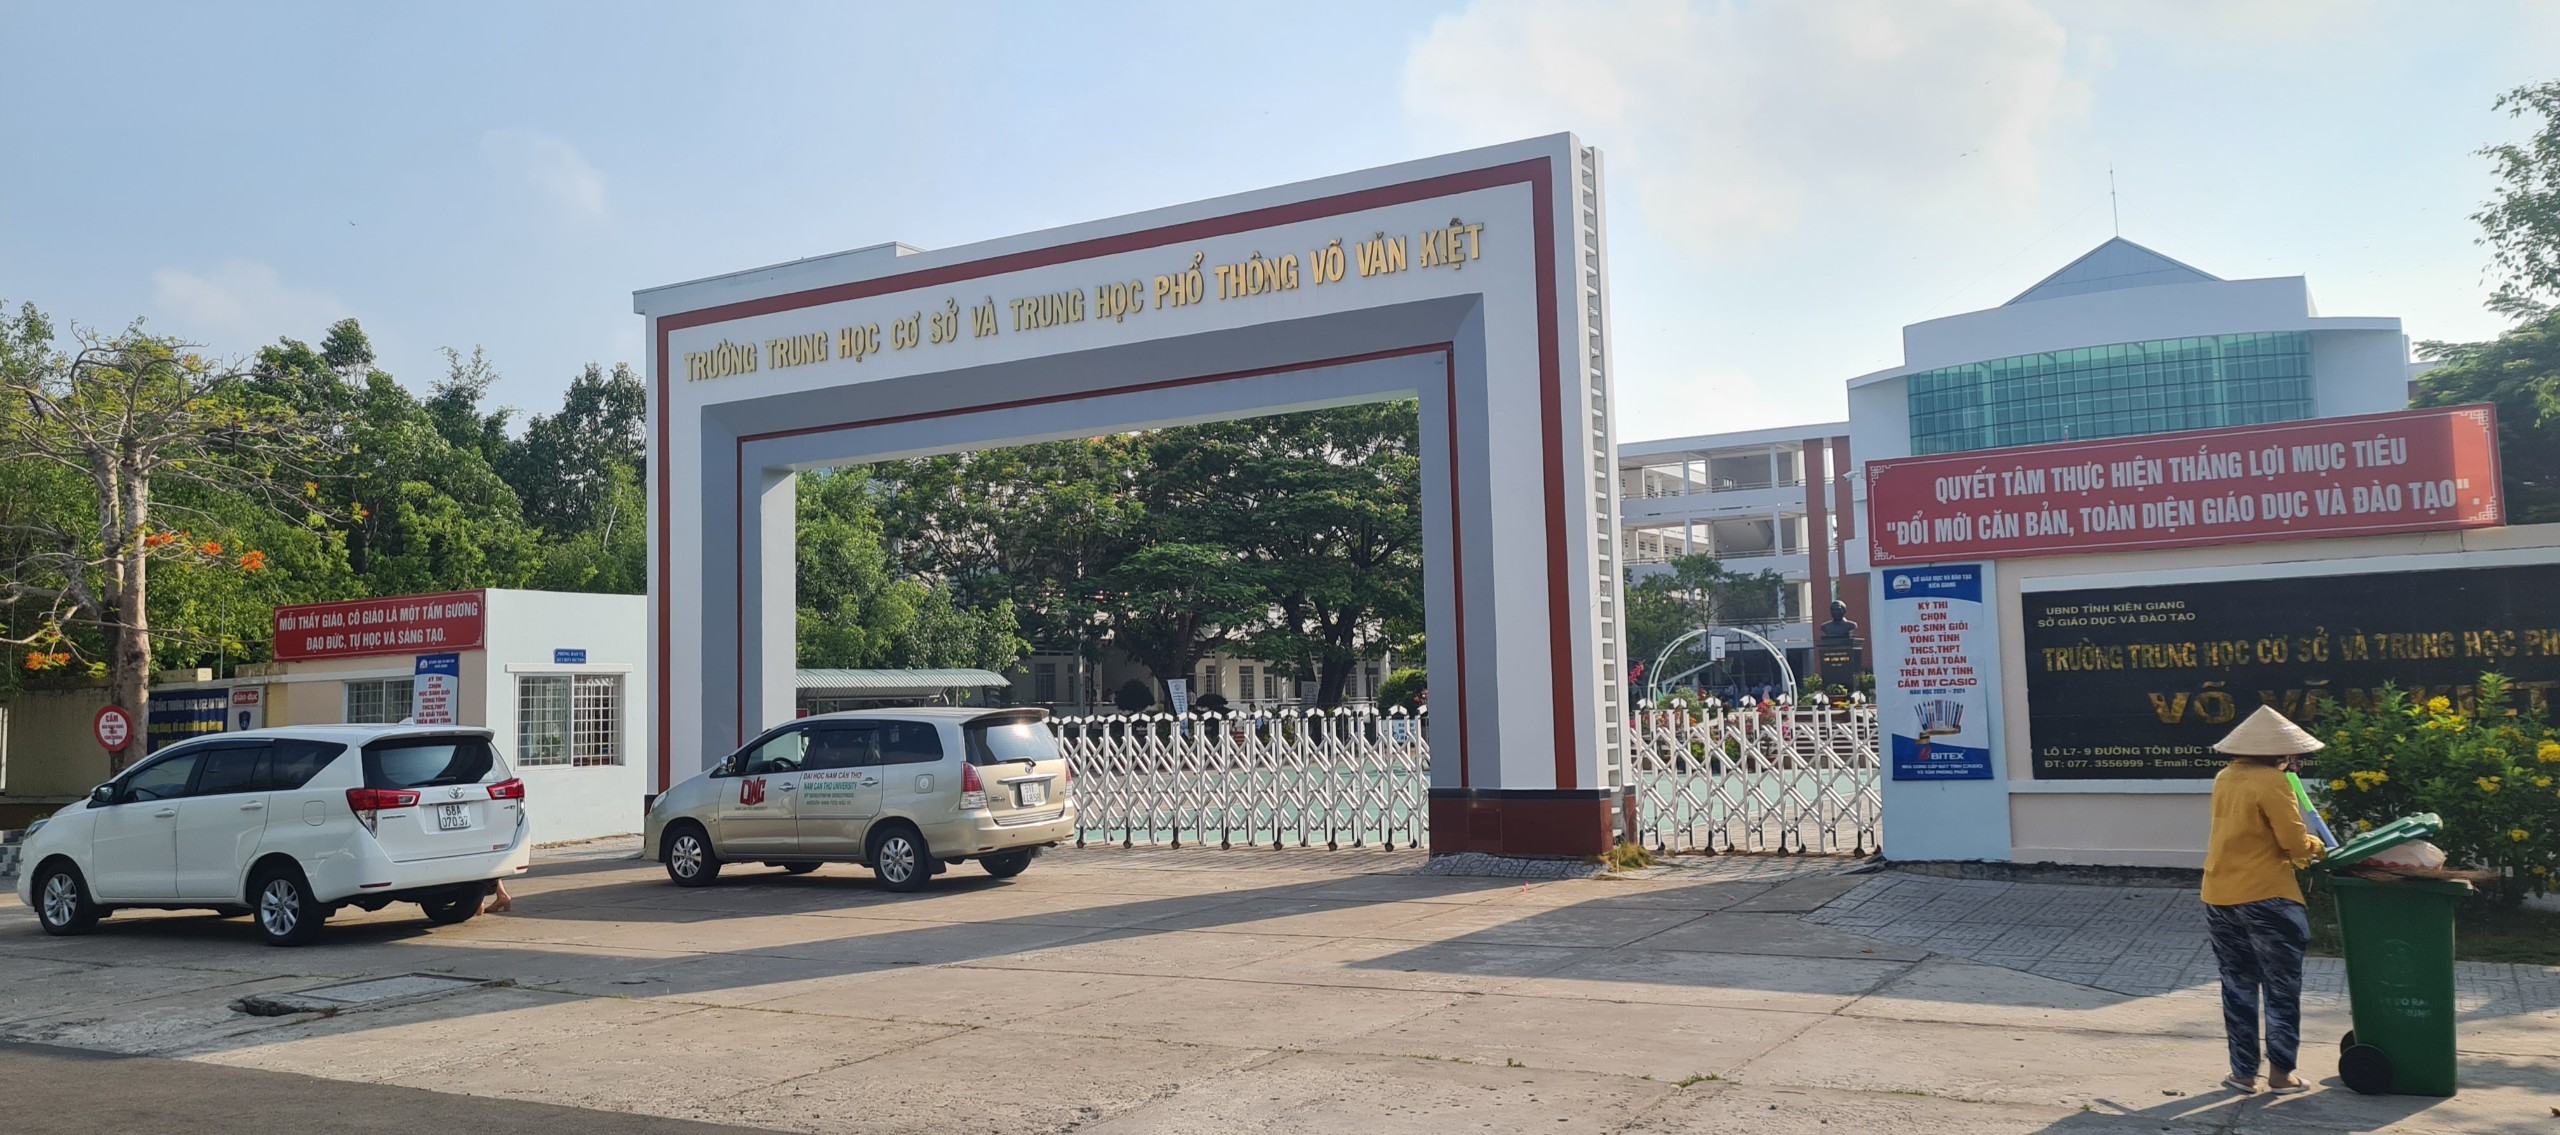 Trường THCS-THPT Võ Văn Kiệt, nơi xảy ra vụ việc nhóm nữ sinh đanh bạn và quay clip